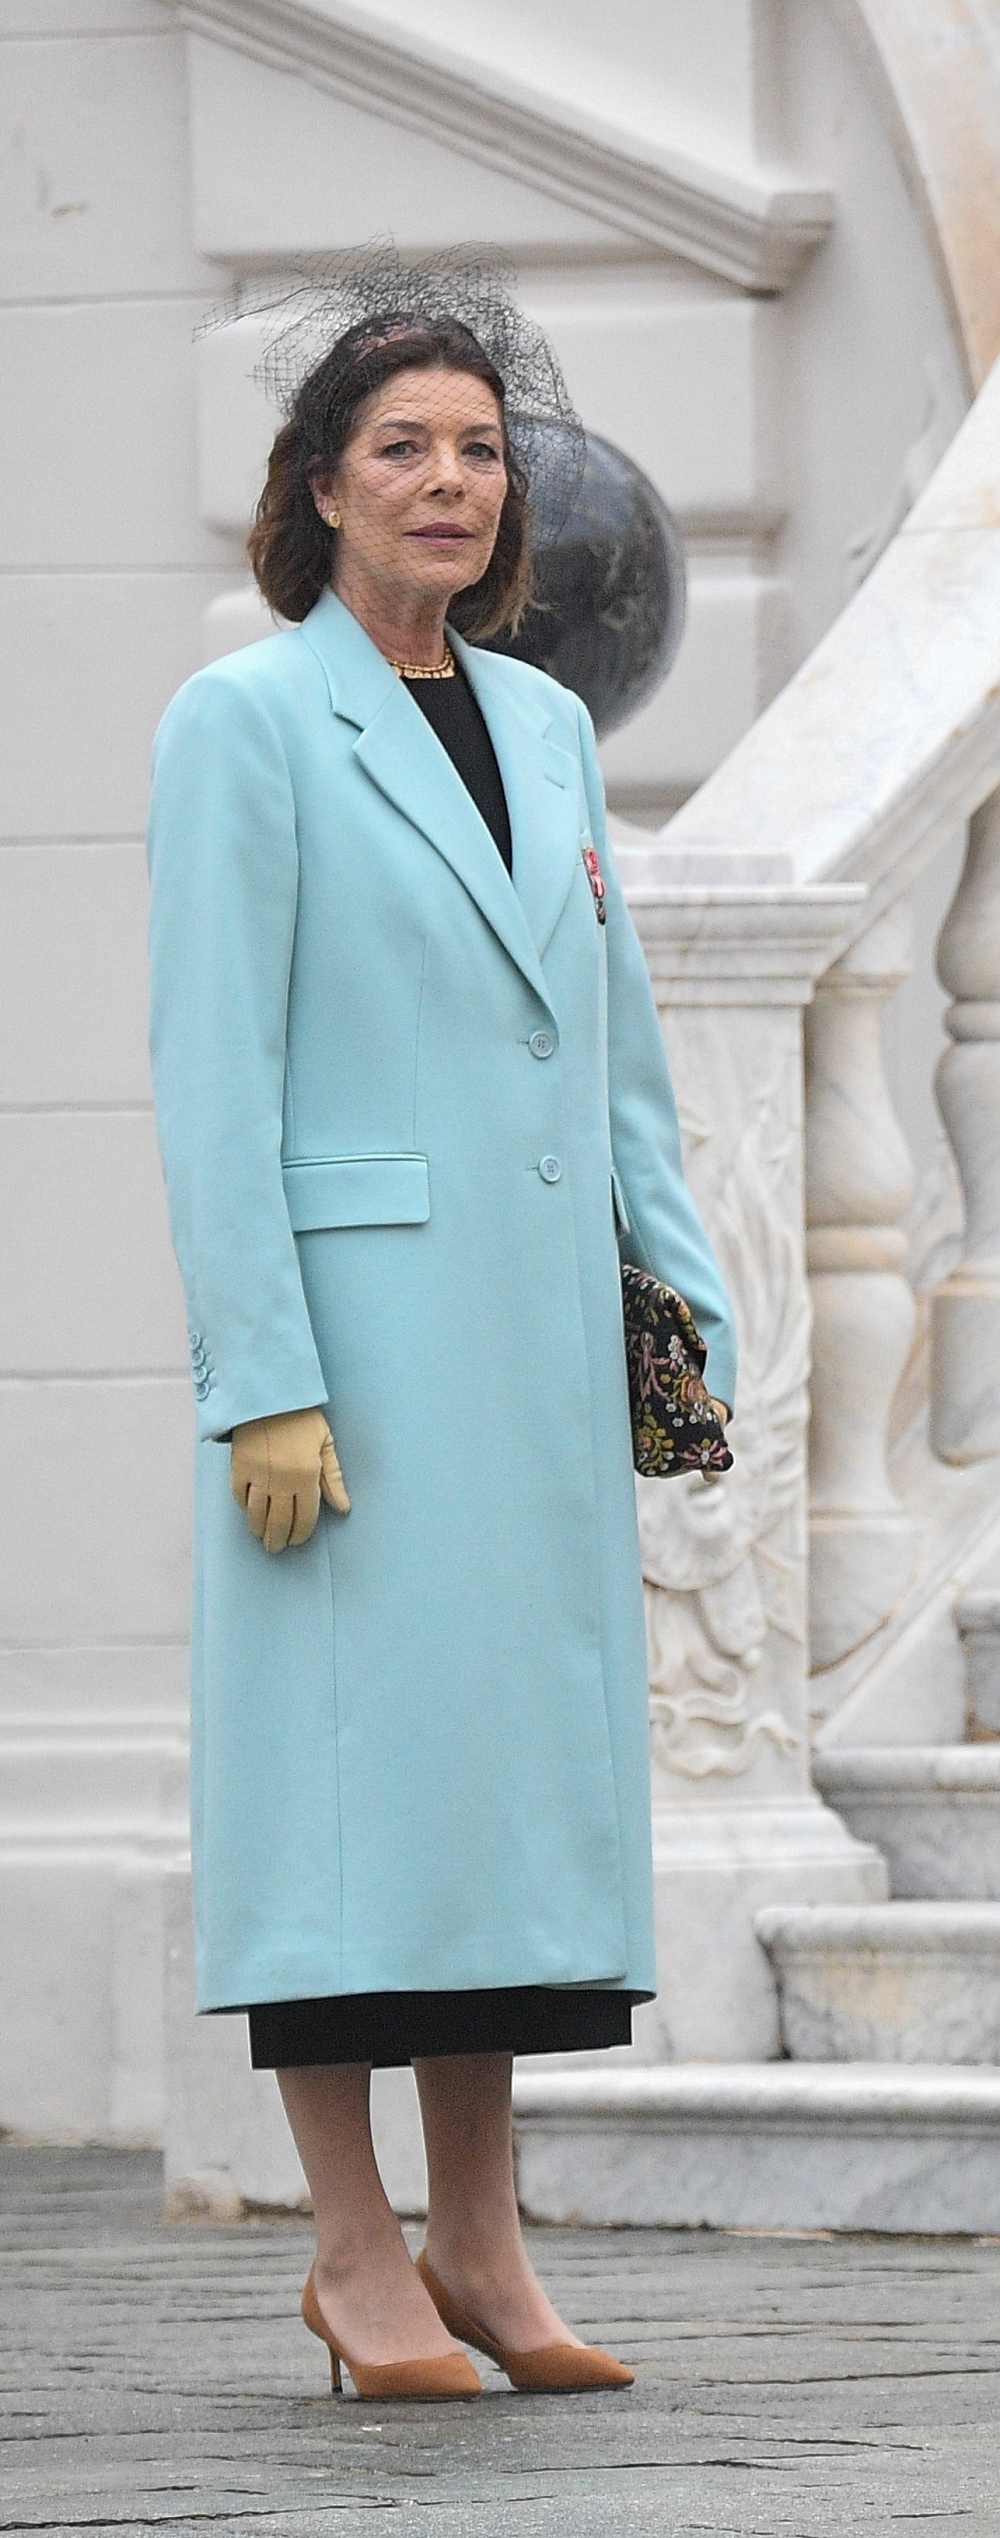 Carolina de Mónaco con abrigo azul.